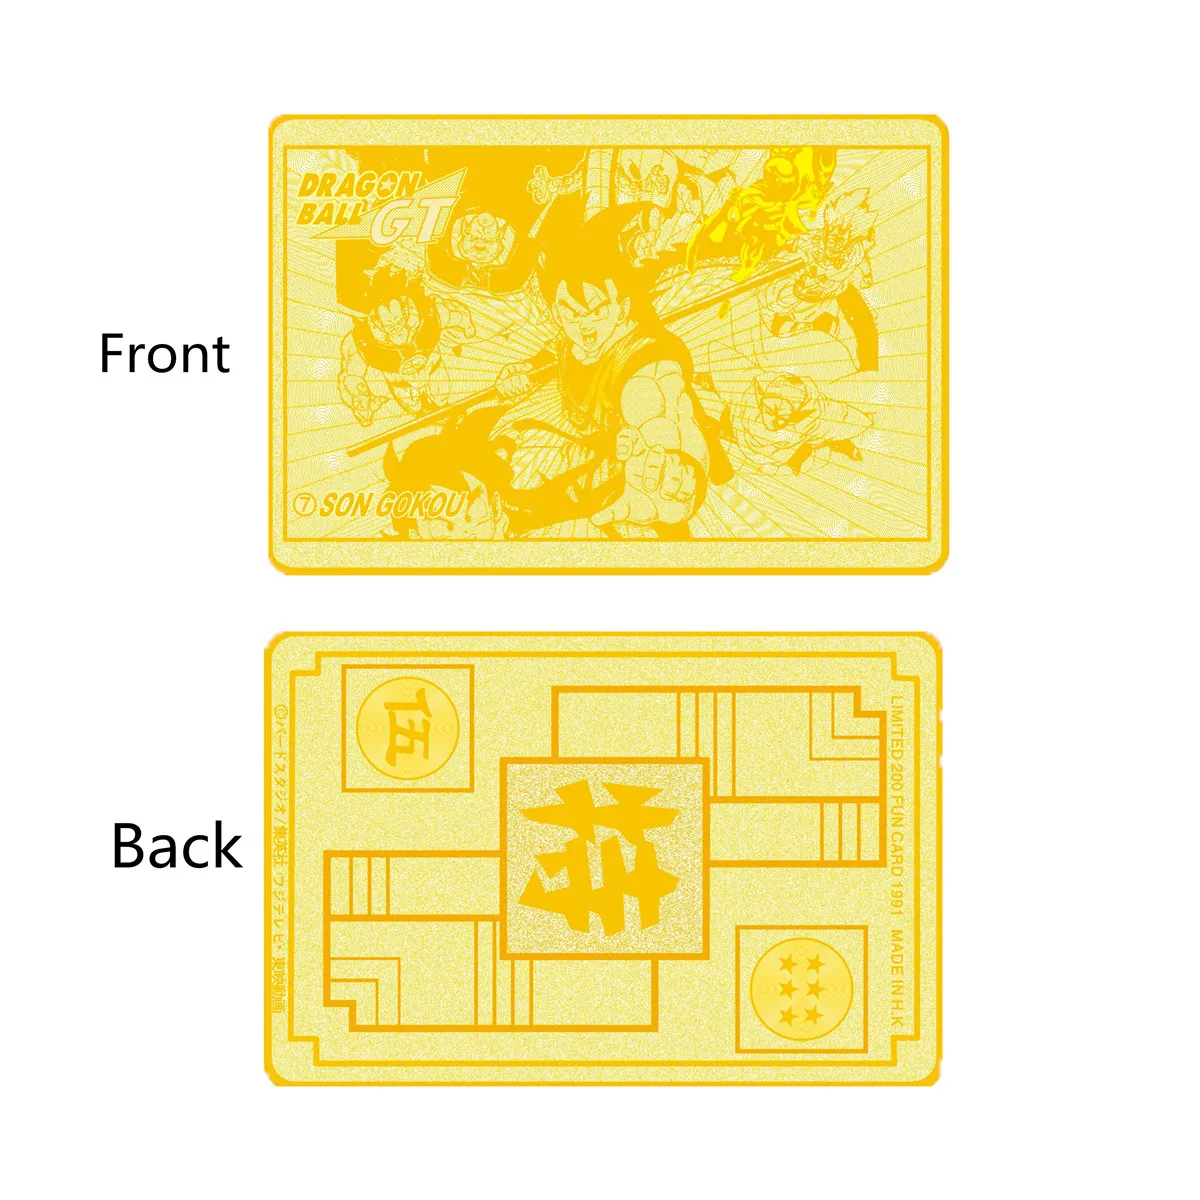 6 шт./лот металлический Dragon Ball Crad(1 шт. золотая металлическая карточка и 5 шт. бумажные игровые карты) с коллекционной пластиковой коробкой Super Dragon Ball Z